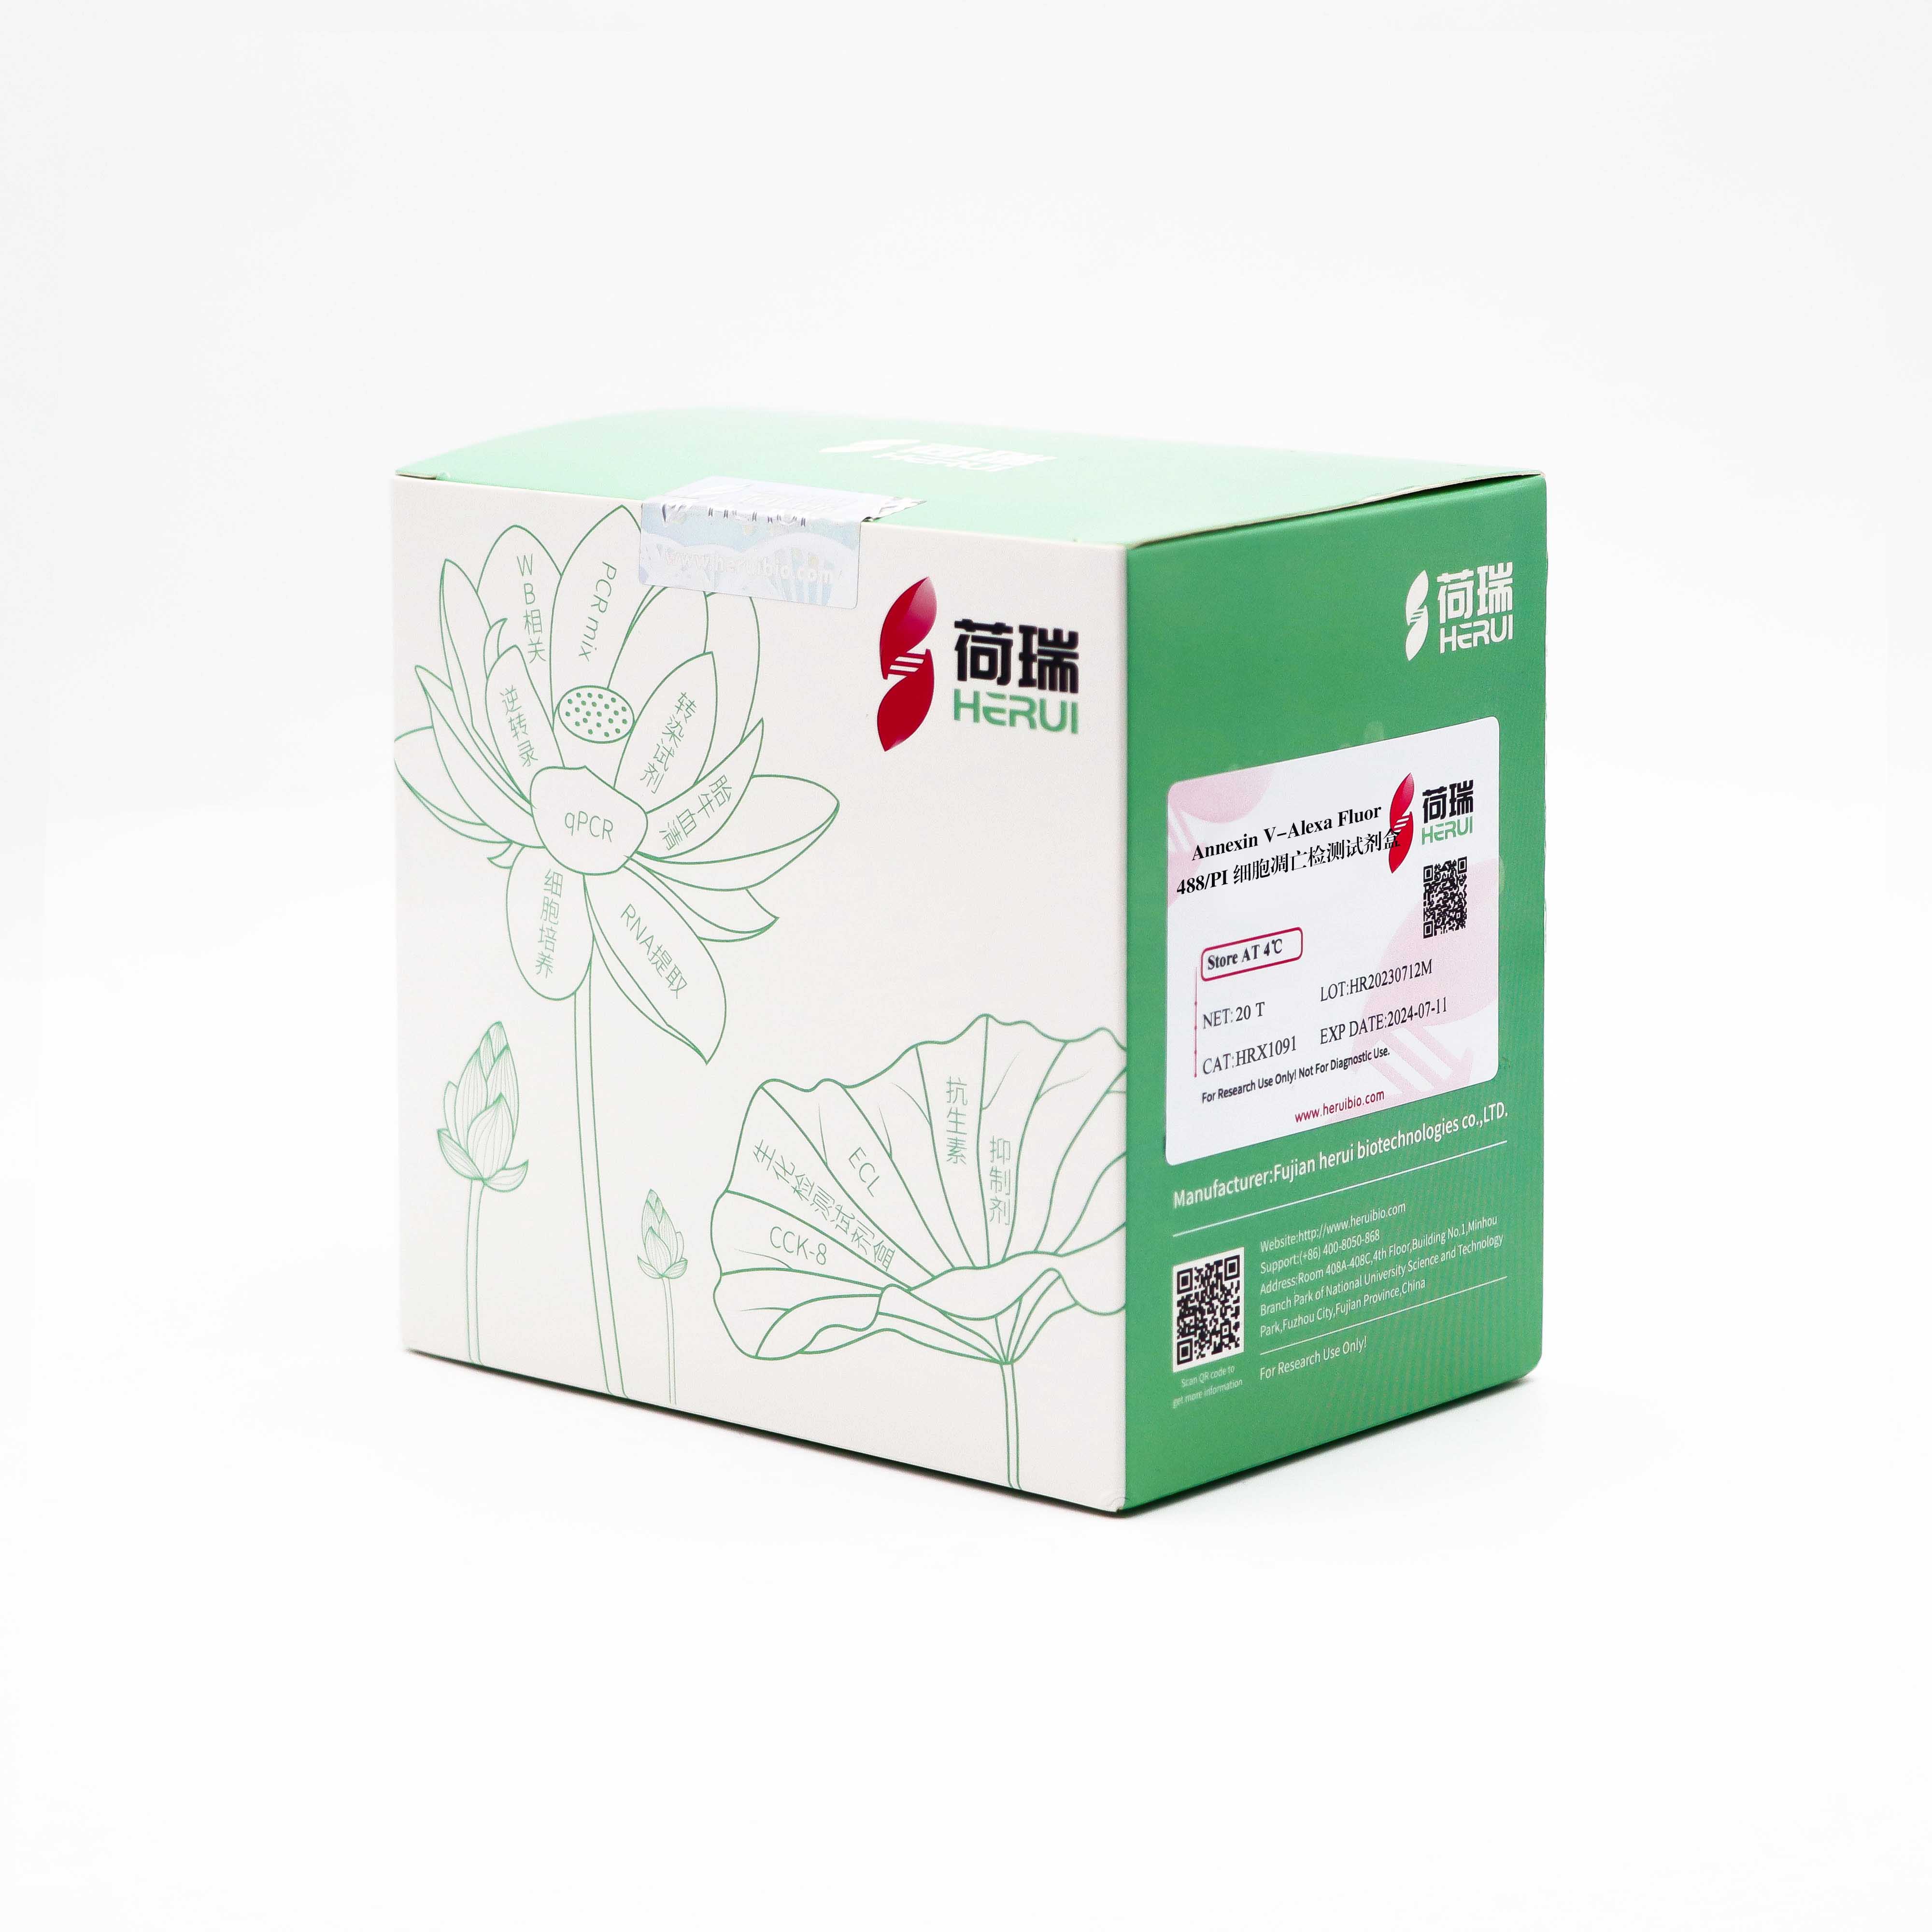 Annexin V- Alexa Fluor 488/PI 细胞凋亡检测试剂盒